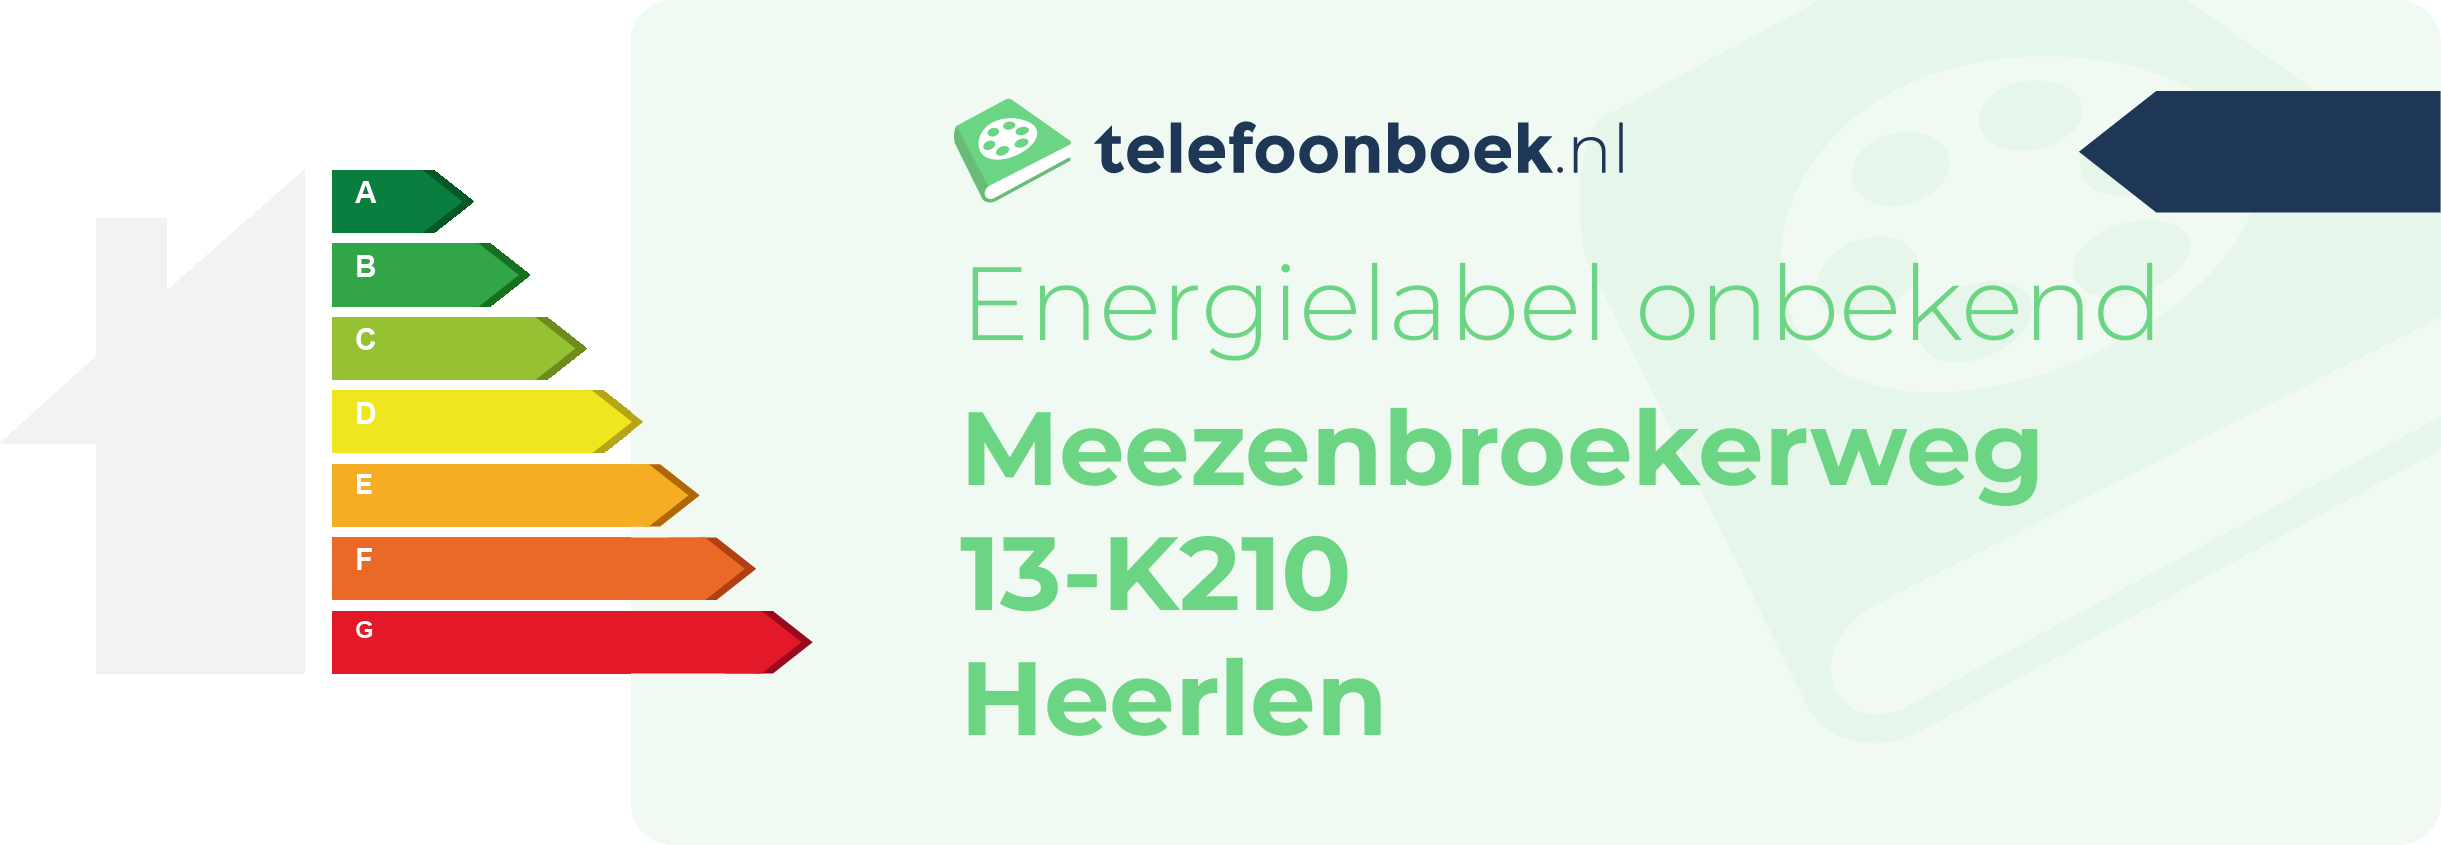 Energielabel Meezenbroekerweg 13-K210 Heerlen